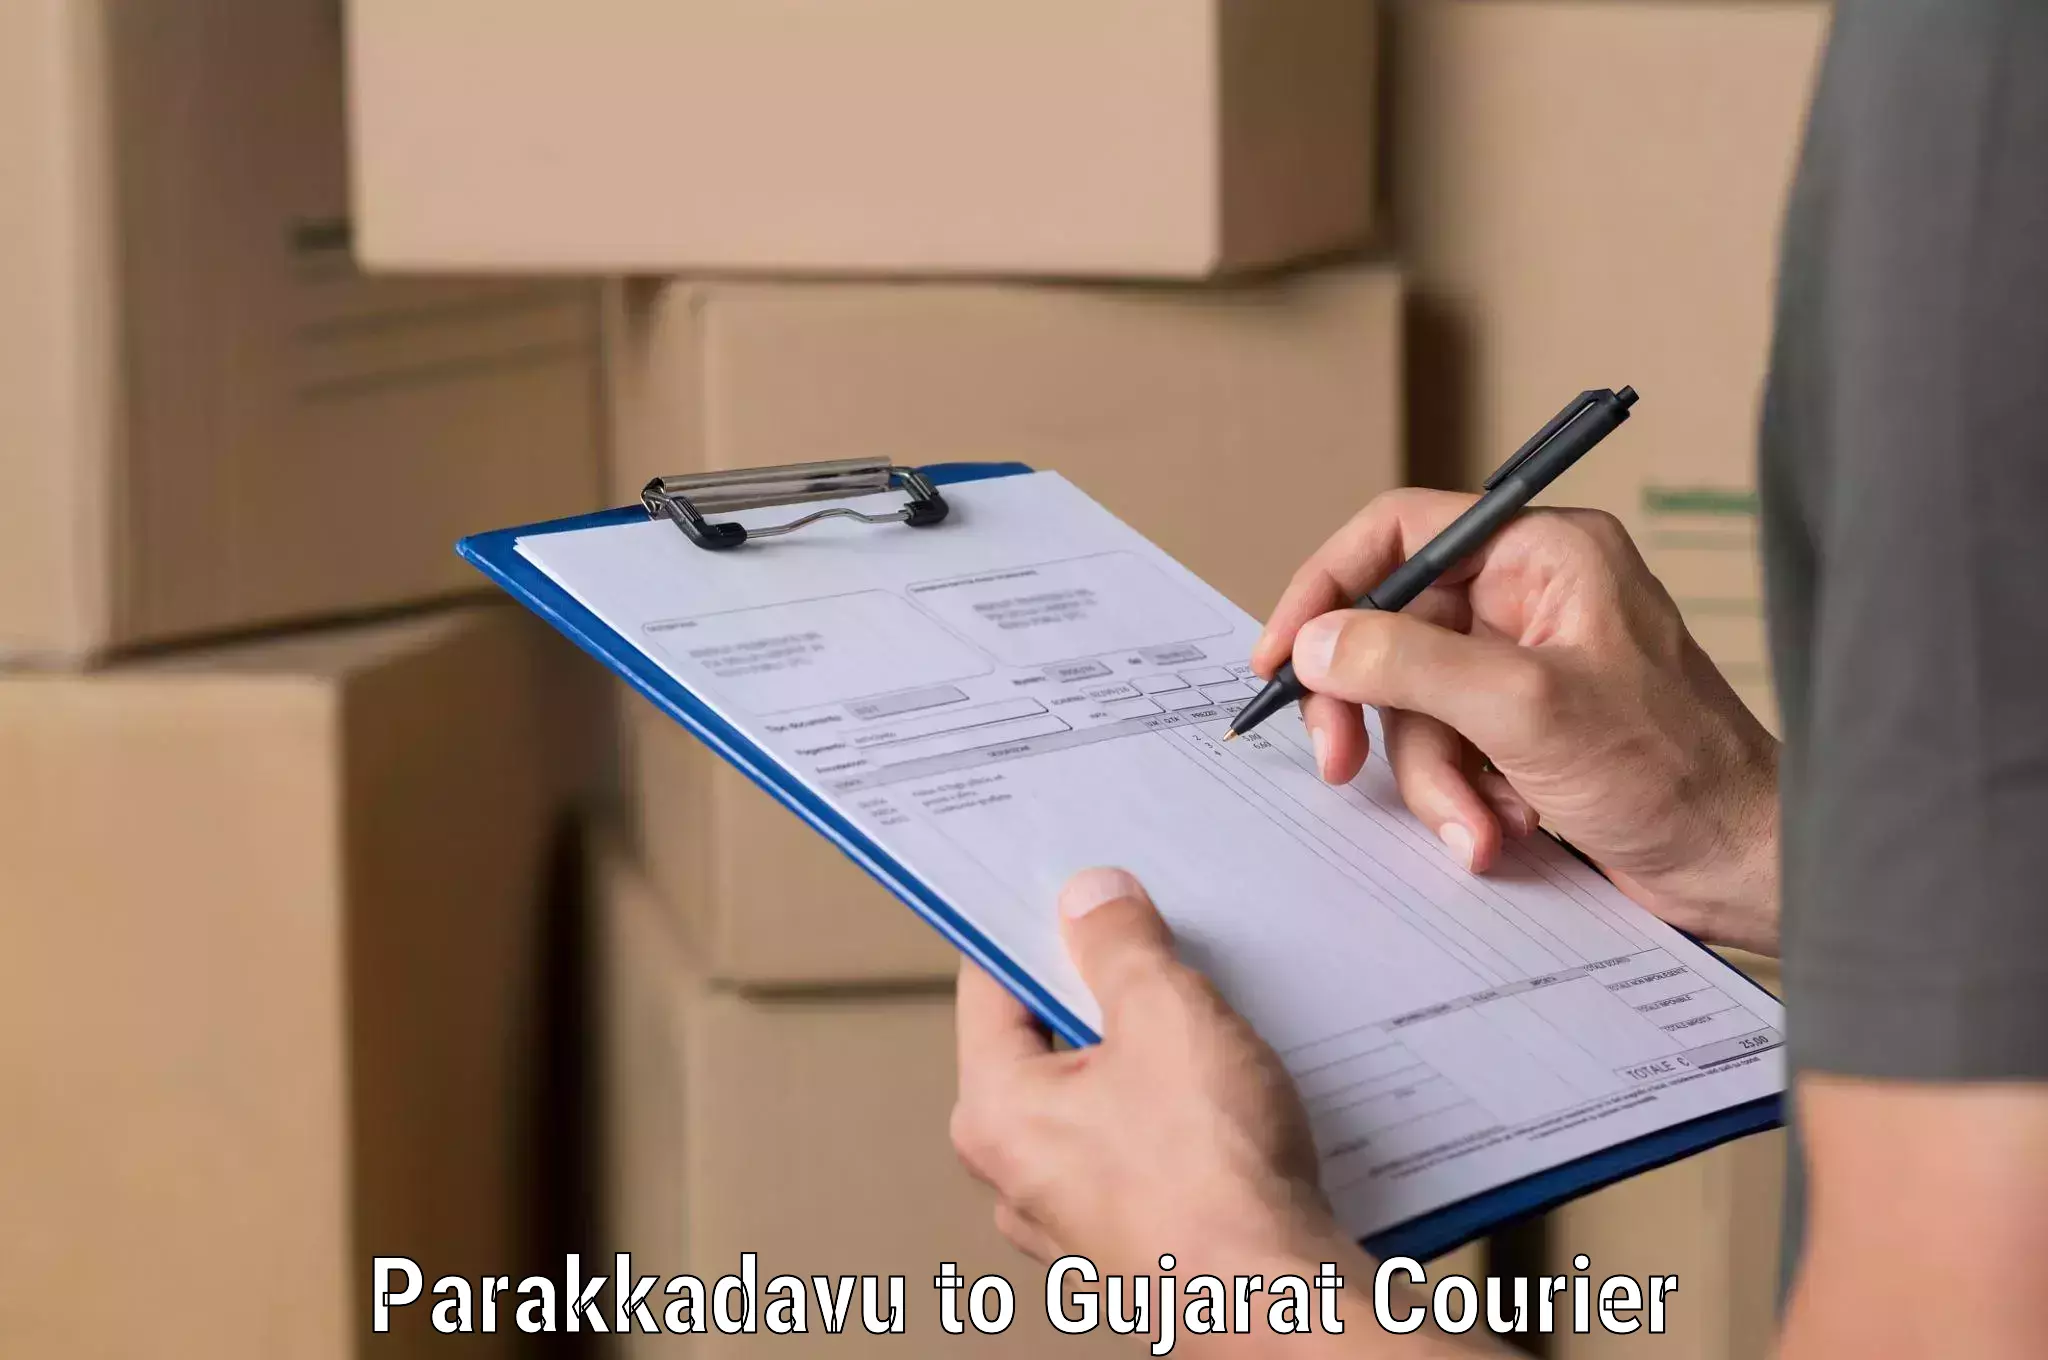 Parcel delivery automation Parakkadavu to GIDC